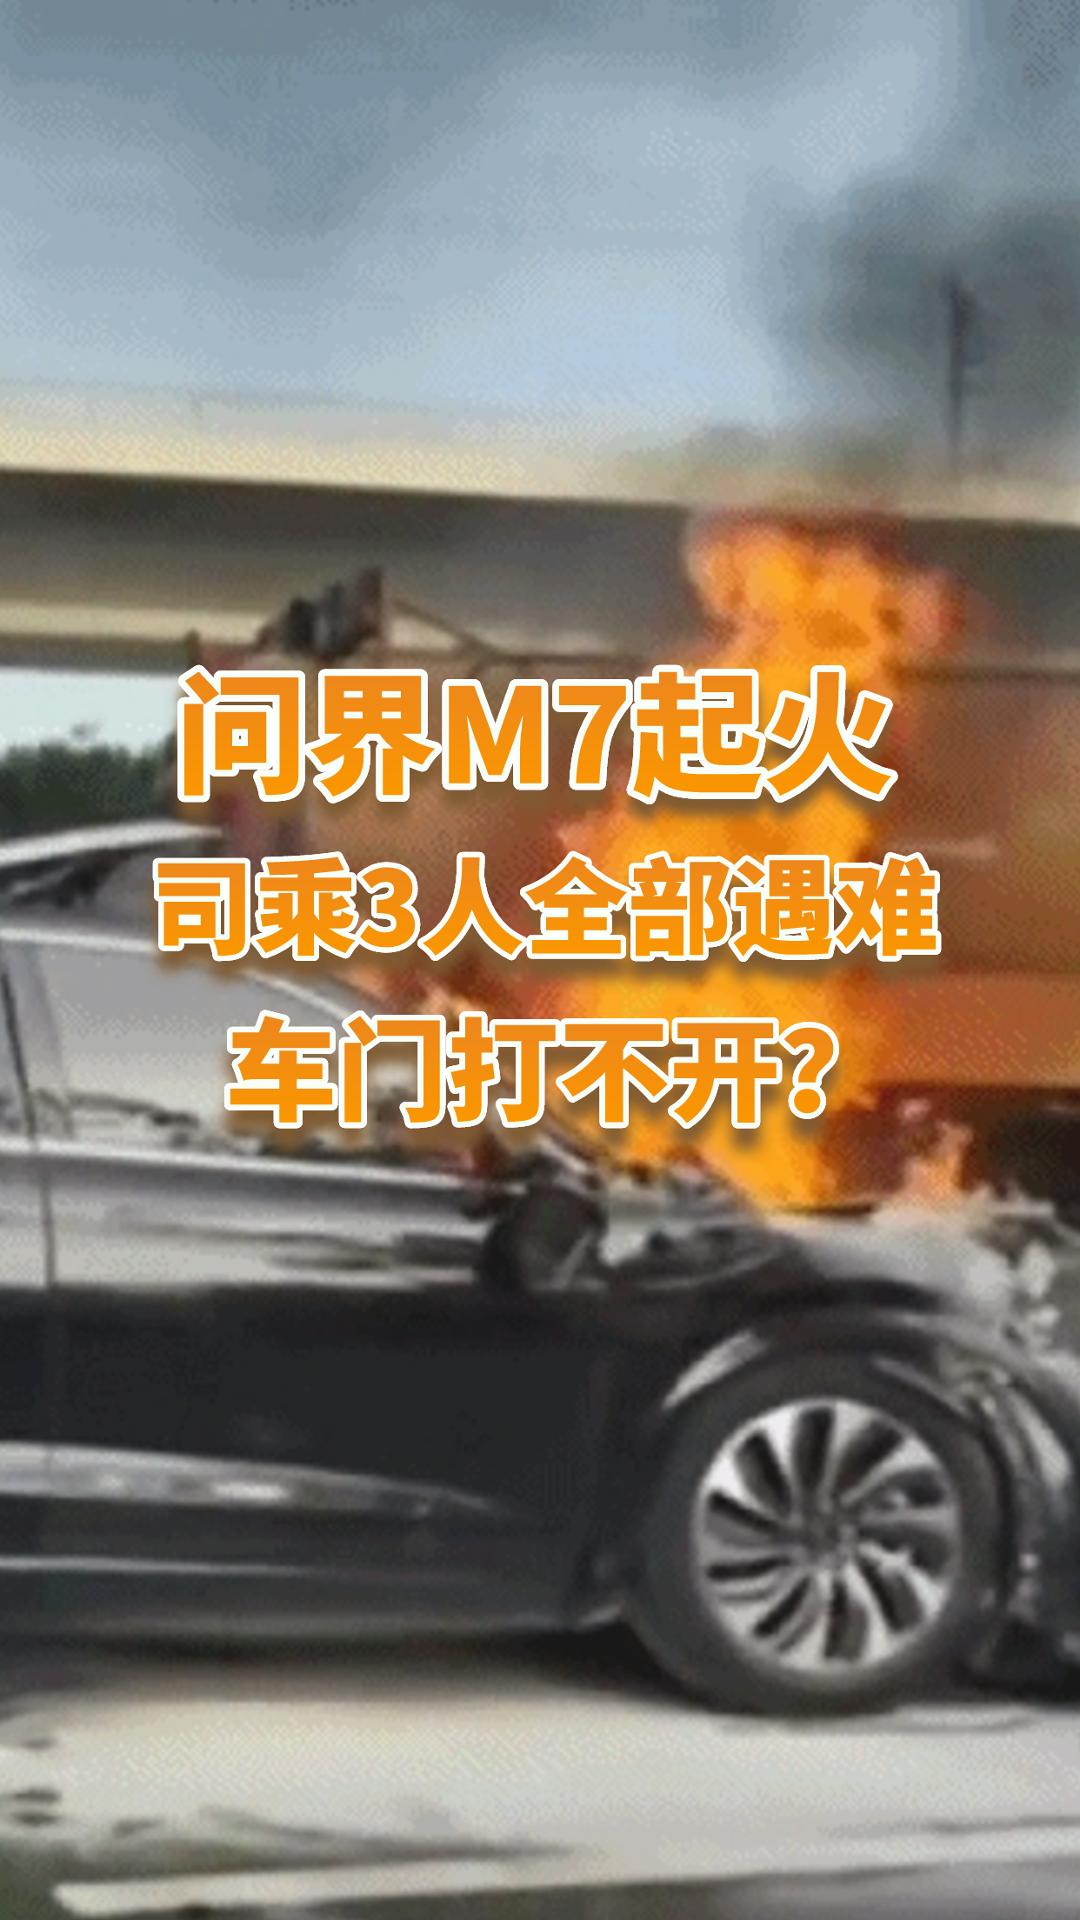 问界M7碰撞后起火，司乘3人遇难，又是车门打不开？